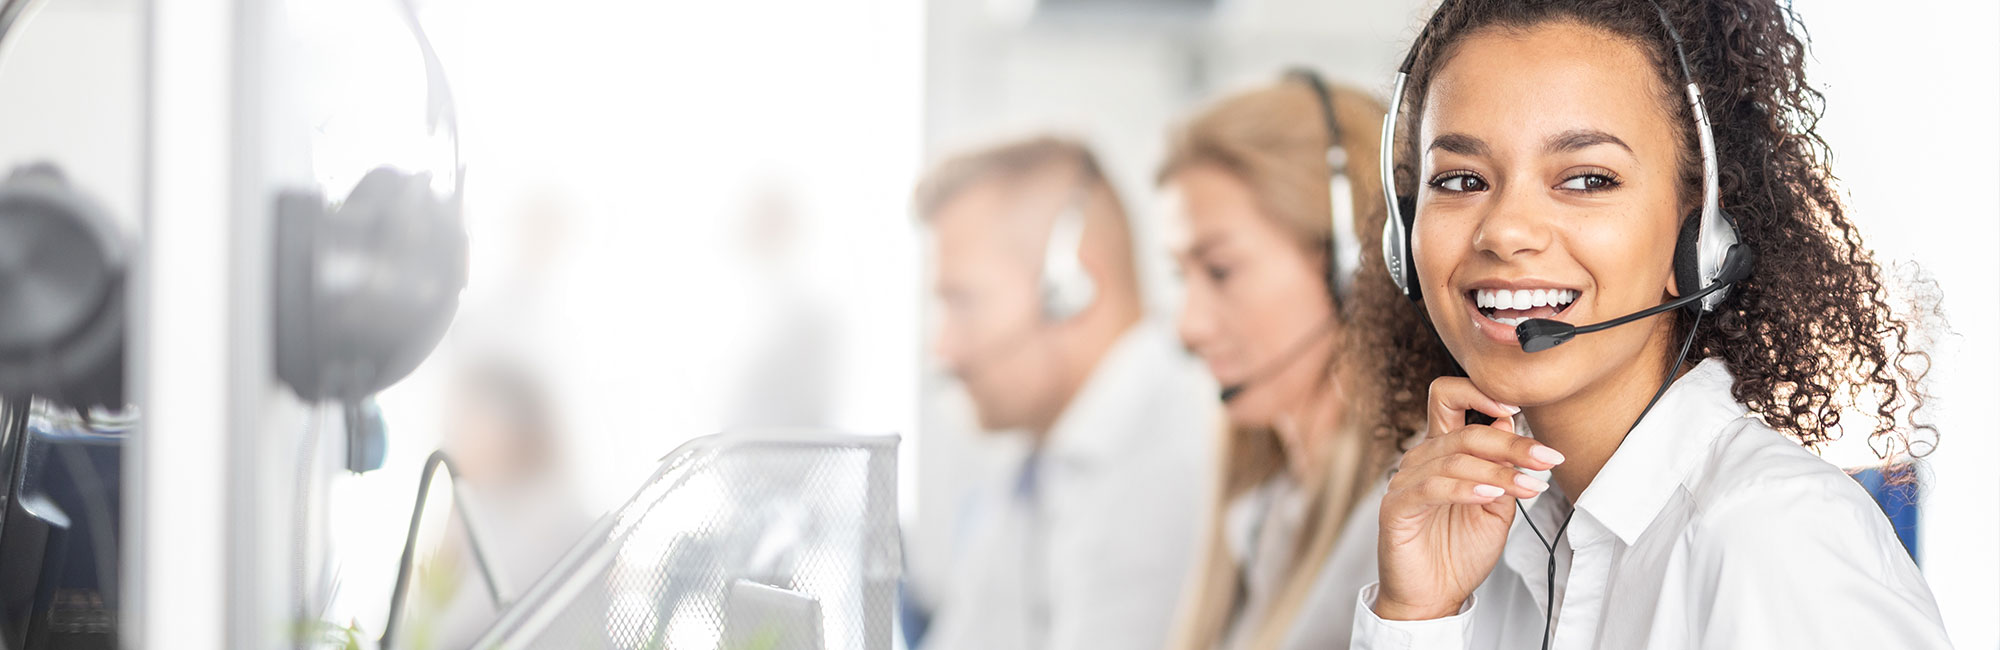 Service Your Patients Deserve with VoiceNation Virtual Receptionists